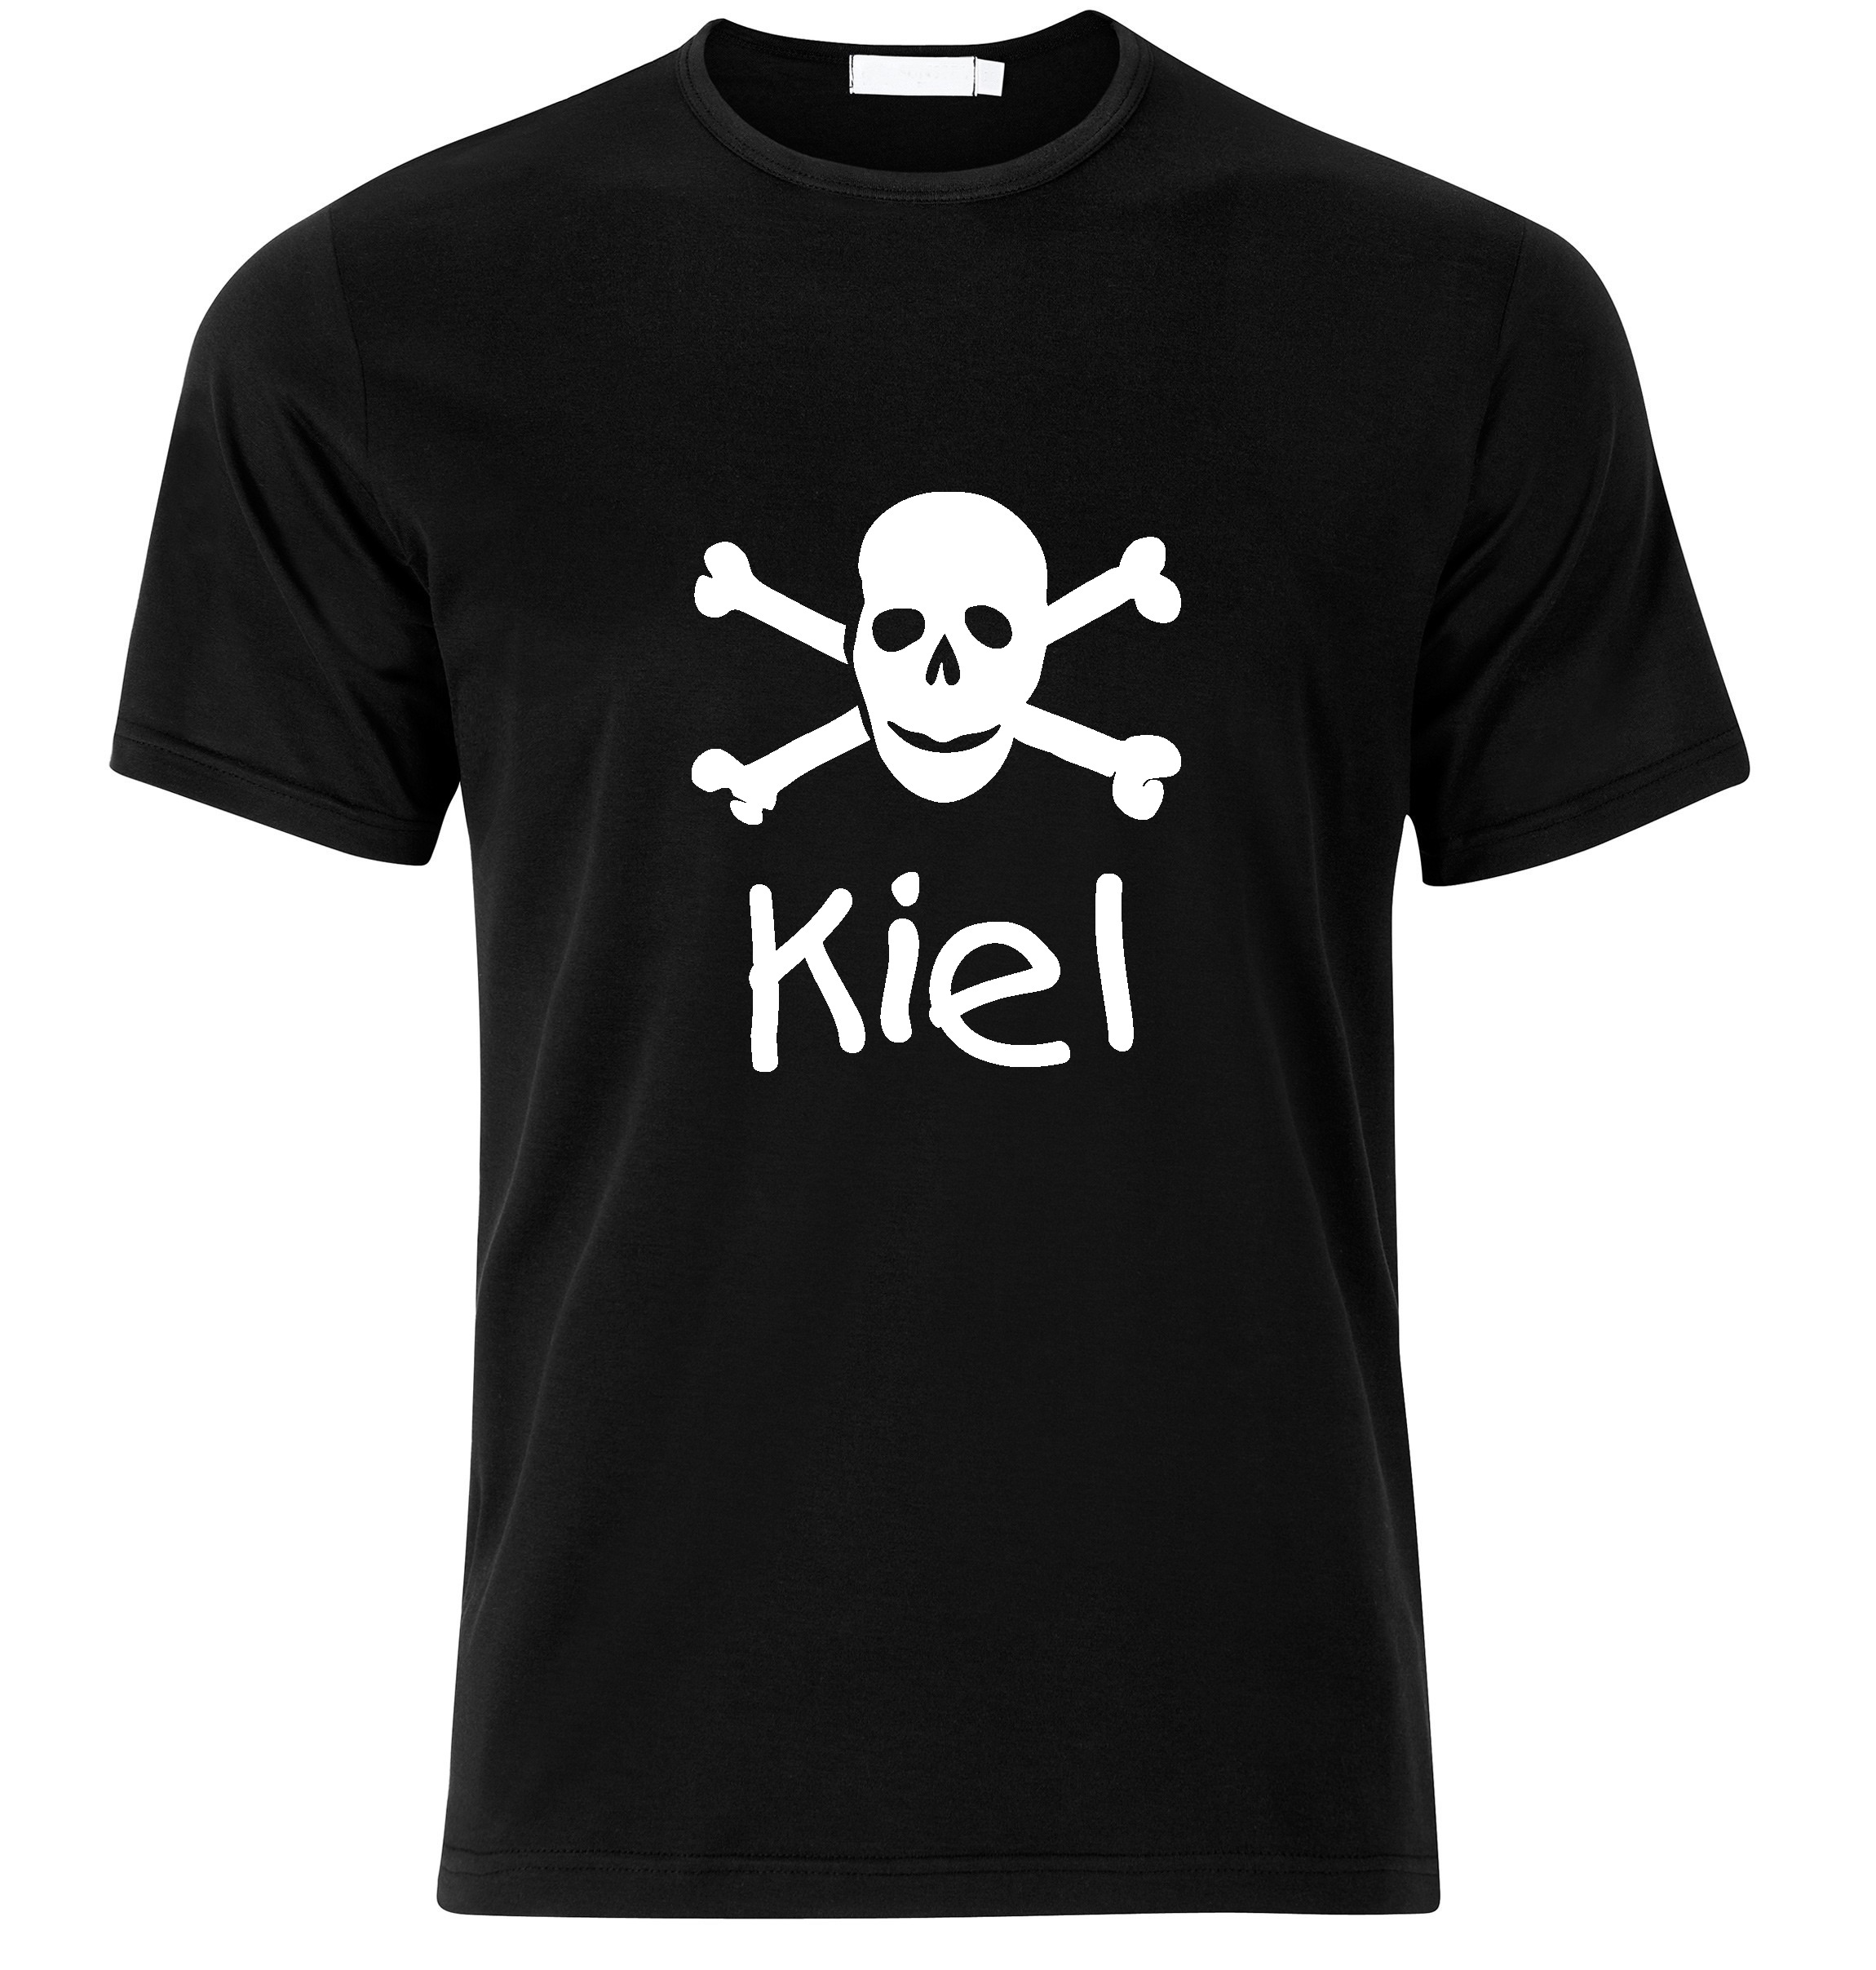 T-Shirt Kiel Jolly Roger, Totenkopf